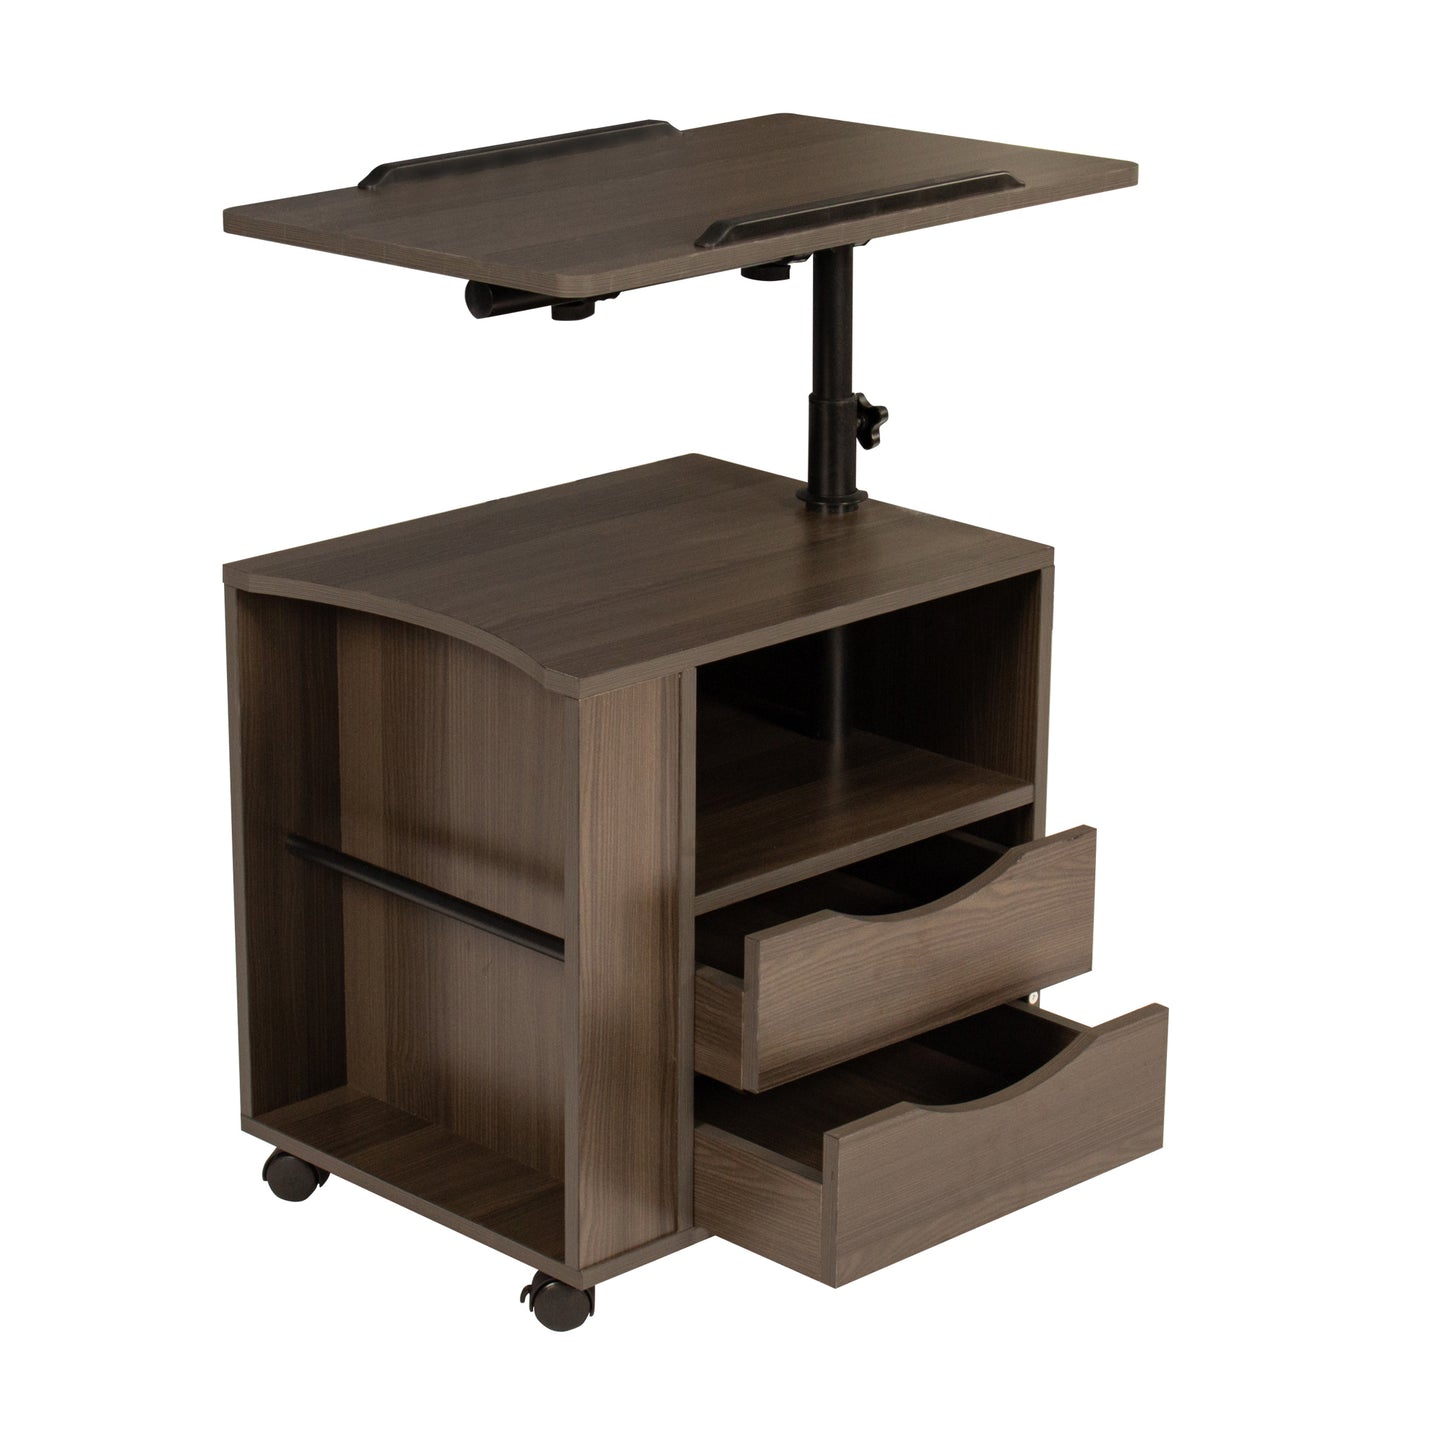 Table de chevet en bois à hauteur réglable avec plateau pivotant, tiroirs de rangement, roulettes et étagère ouverte (chêne noir)